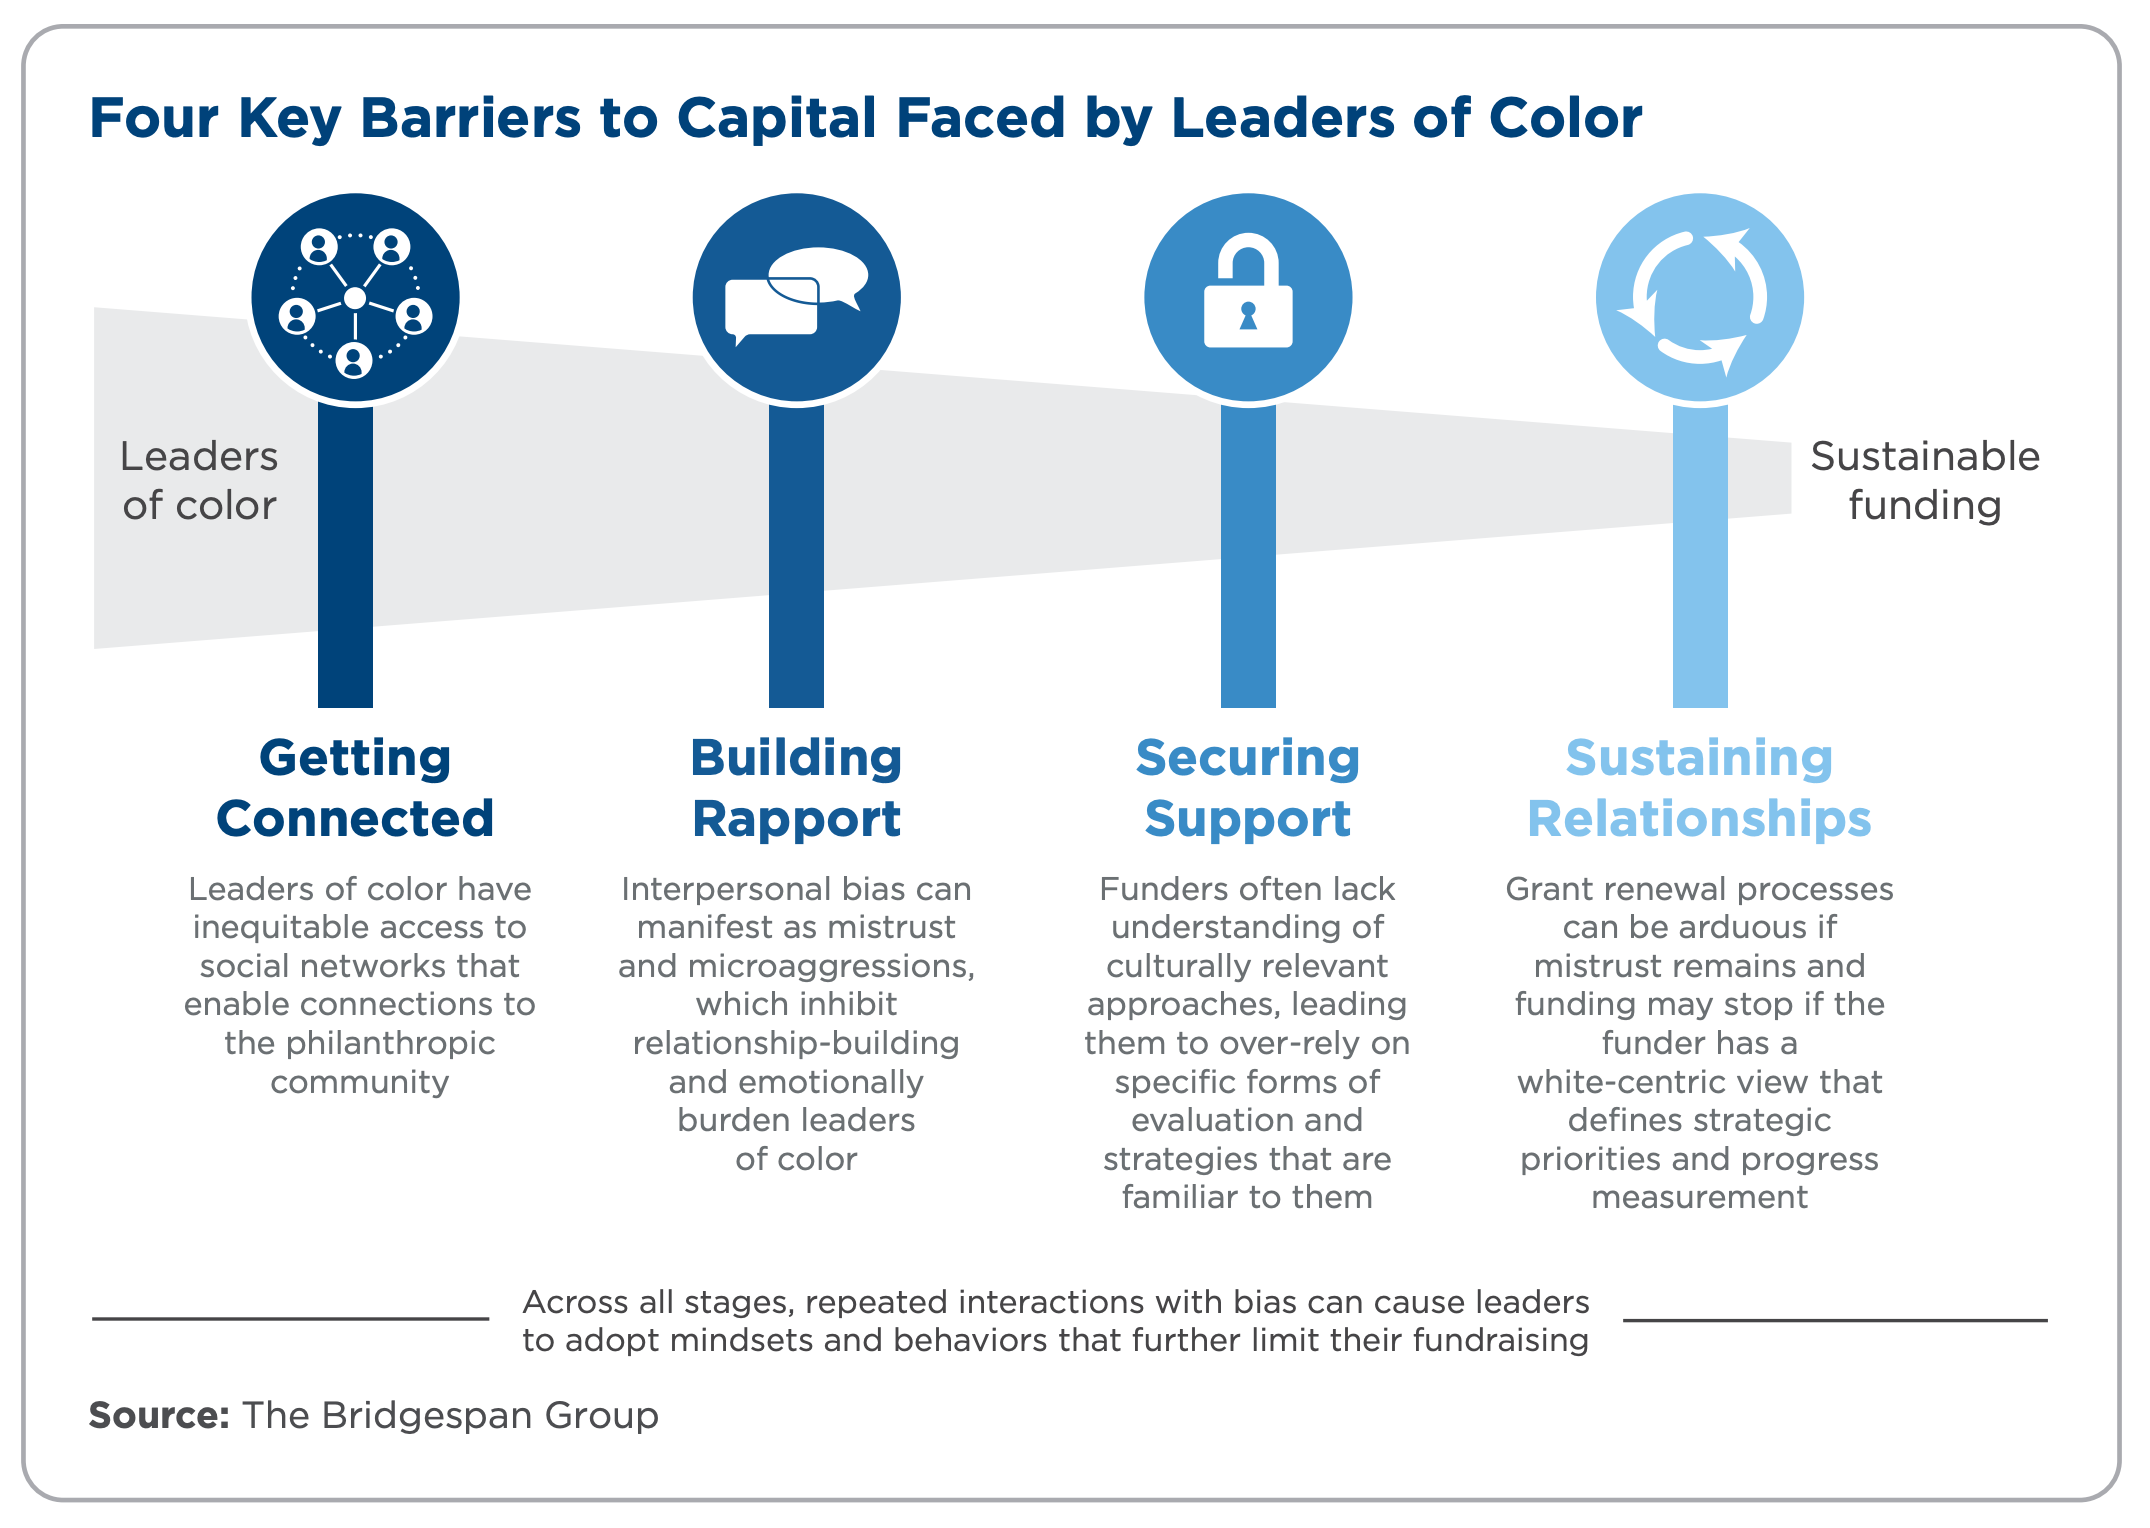 种族平等和慈善事业:为有色人种领袖提供资金的差异留下了影响。资料来源:Bridgespan Group 2020。